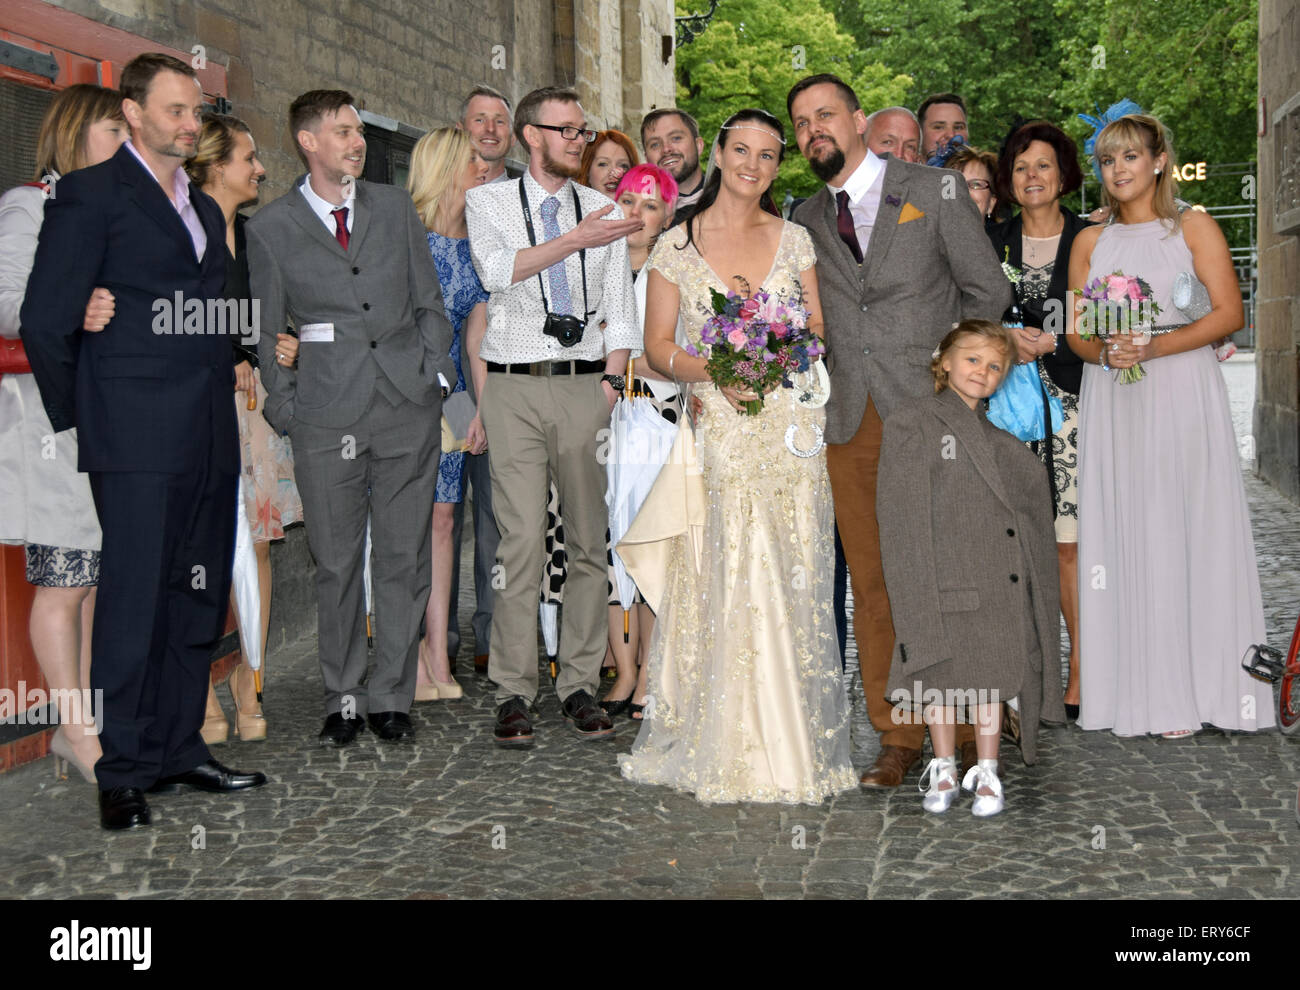 Una boda británica tras una fotografía de grupo tomada en su boda con destino en Brugge, Bélgica Foto de stock